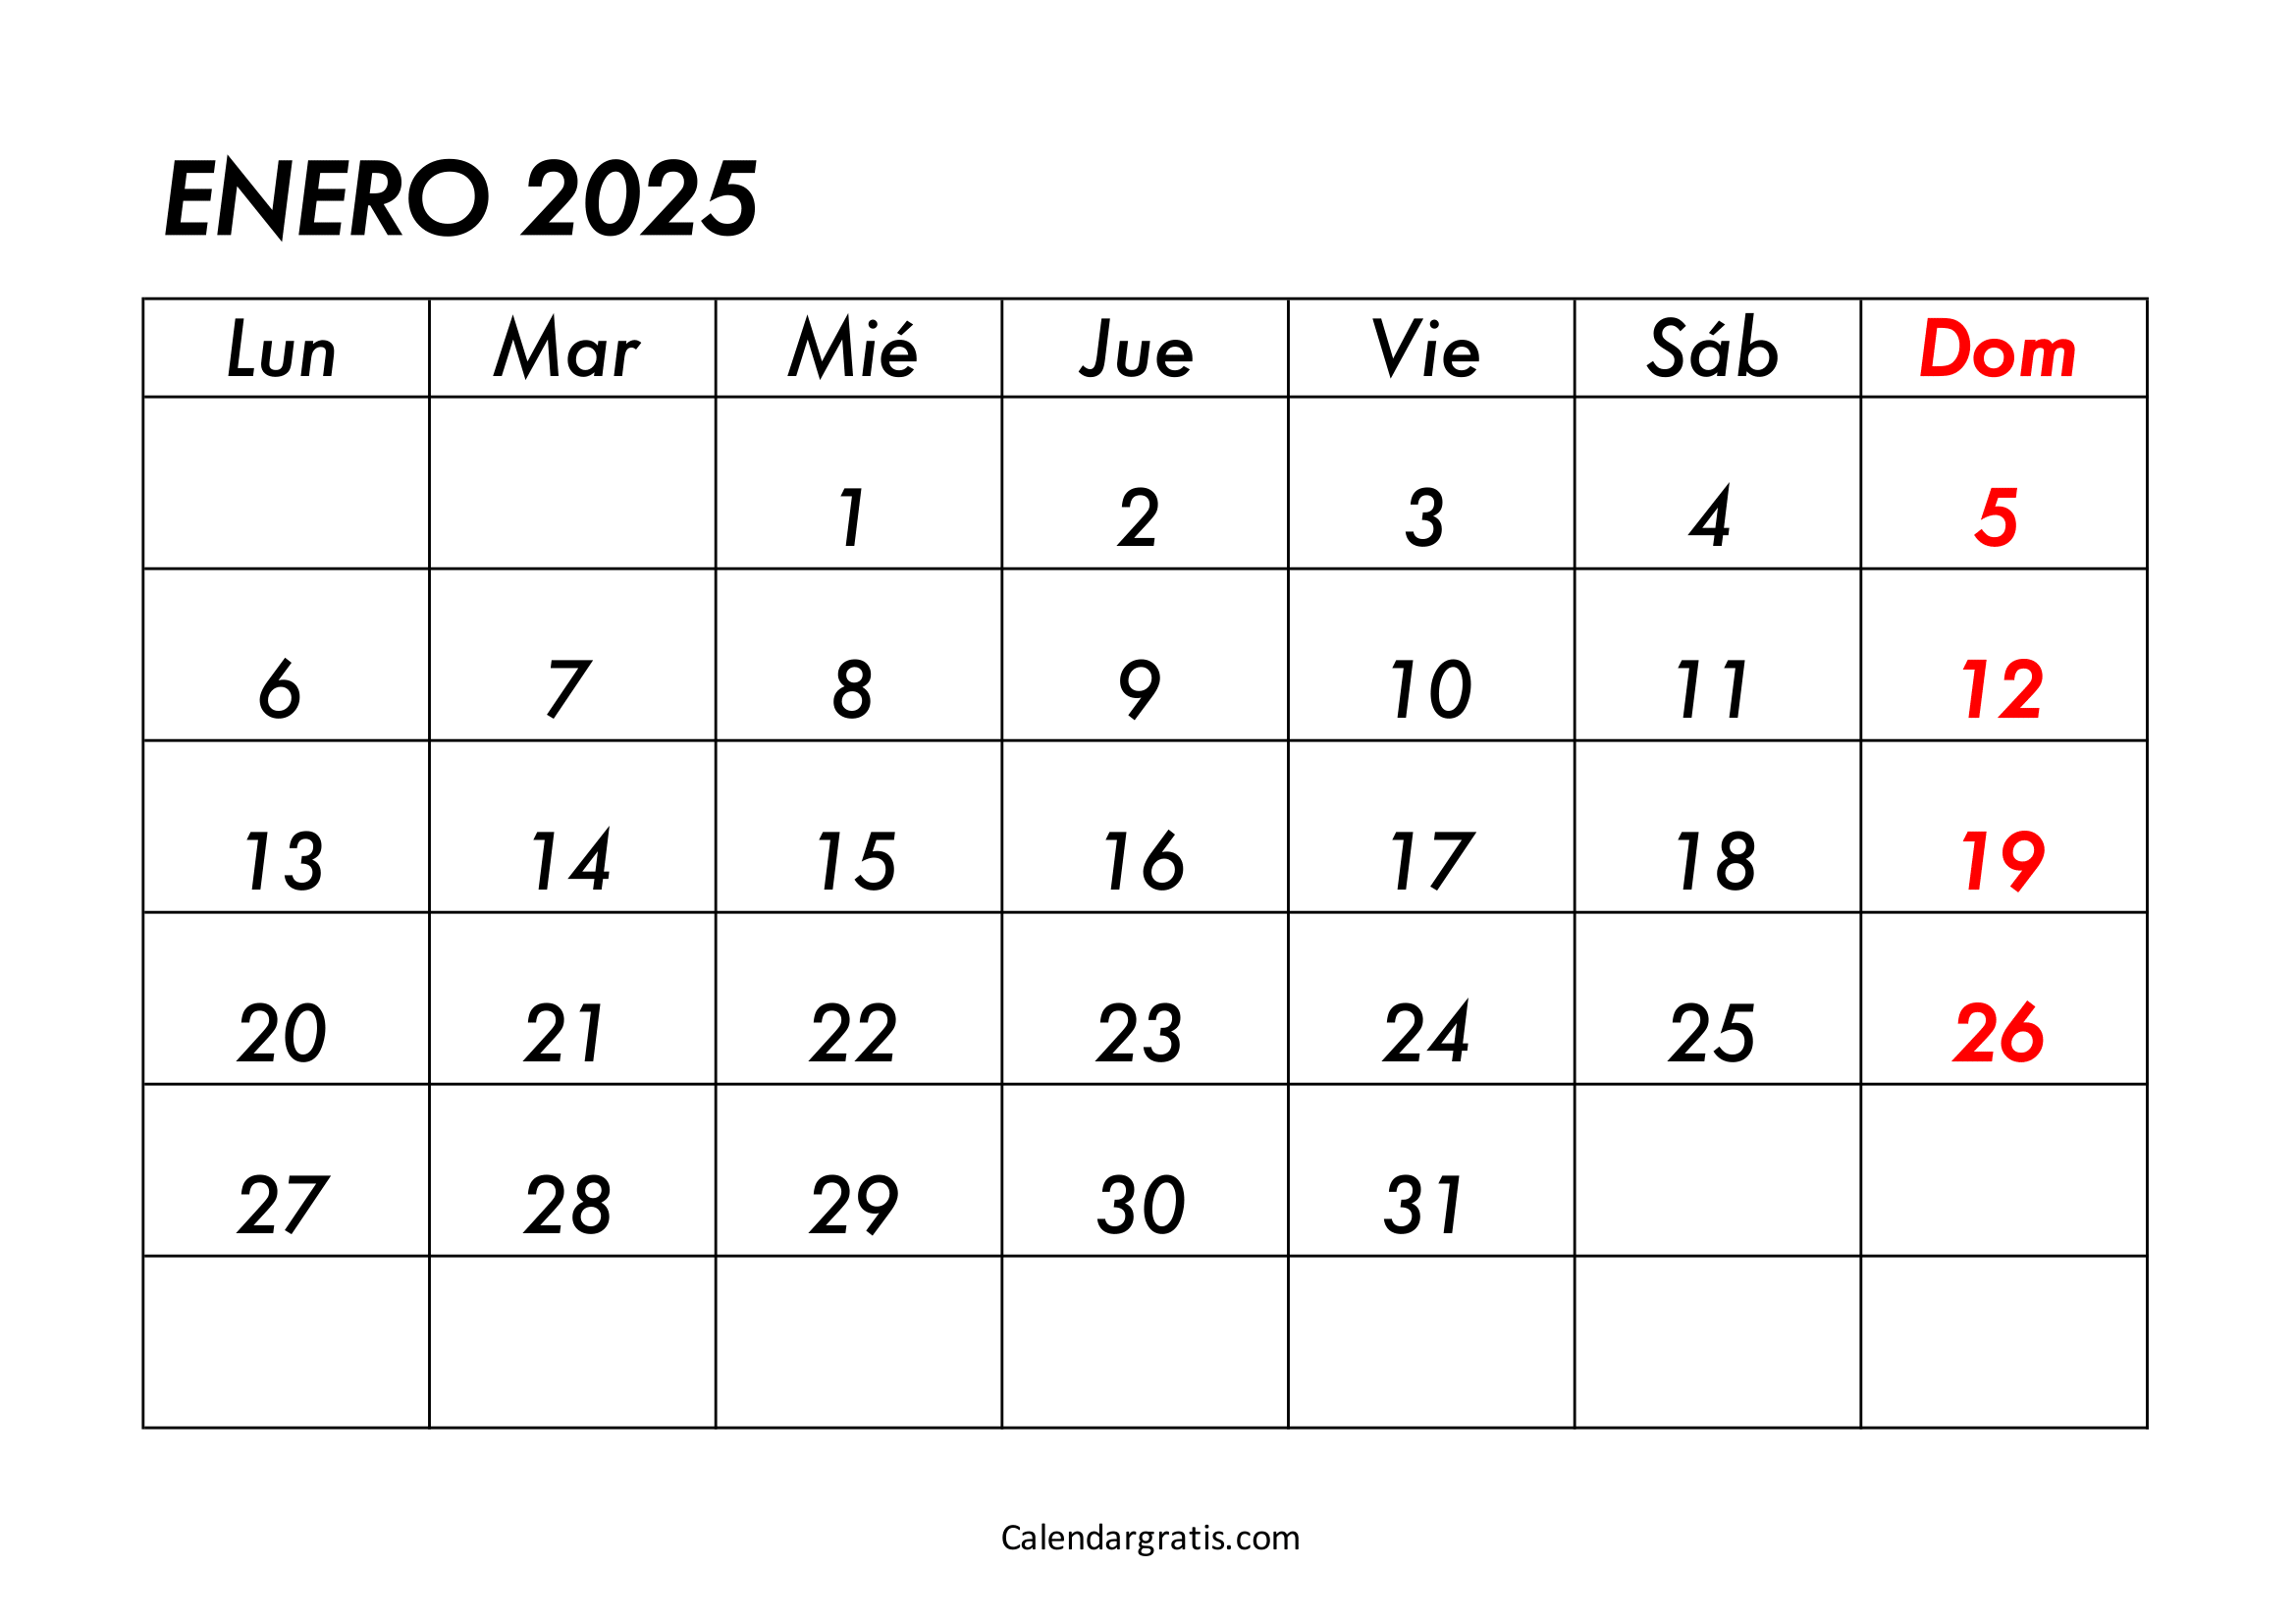 Calendario del mes de enero 2025 para imprimir